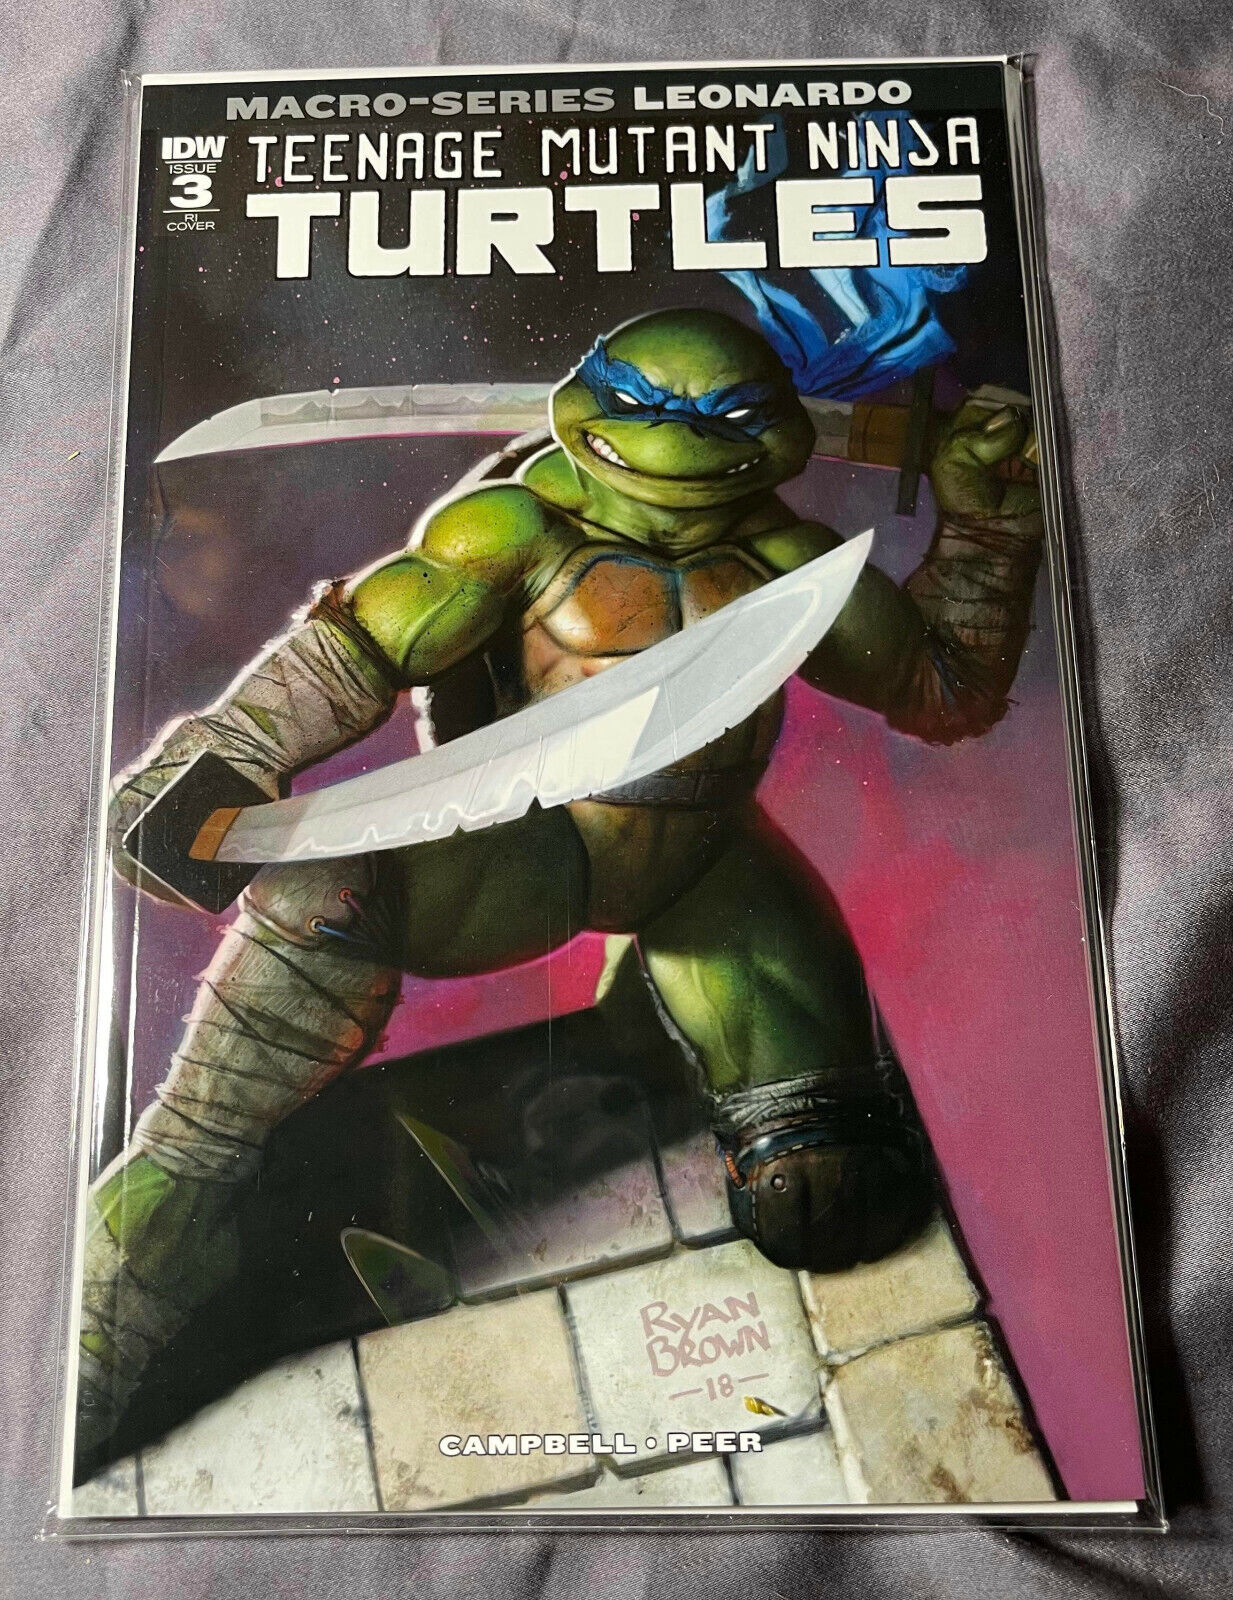 Teenage Mutant Ninja Turtles #3  TMNT RARE! LEONARDO MACRO SERIES RI Variant NM